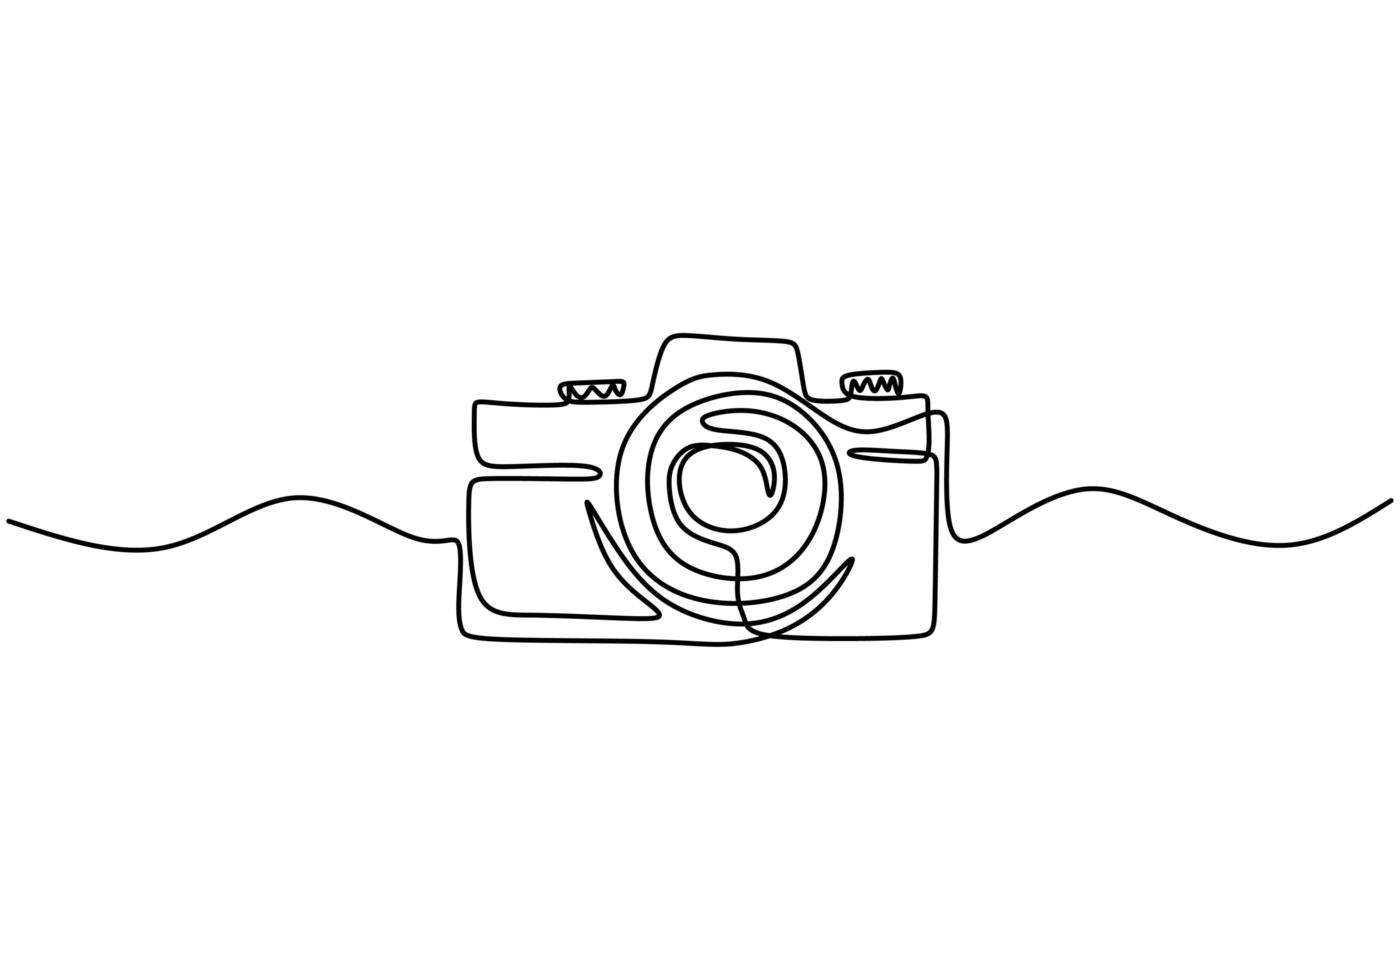 diseño de cámara digital de una línea. estilo minimalista dibujado a mano, ilustración de vector de gadget de tecnología.